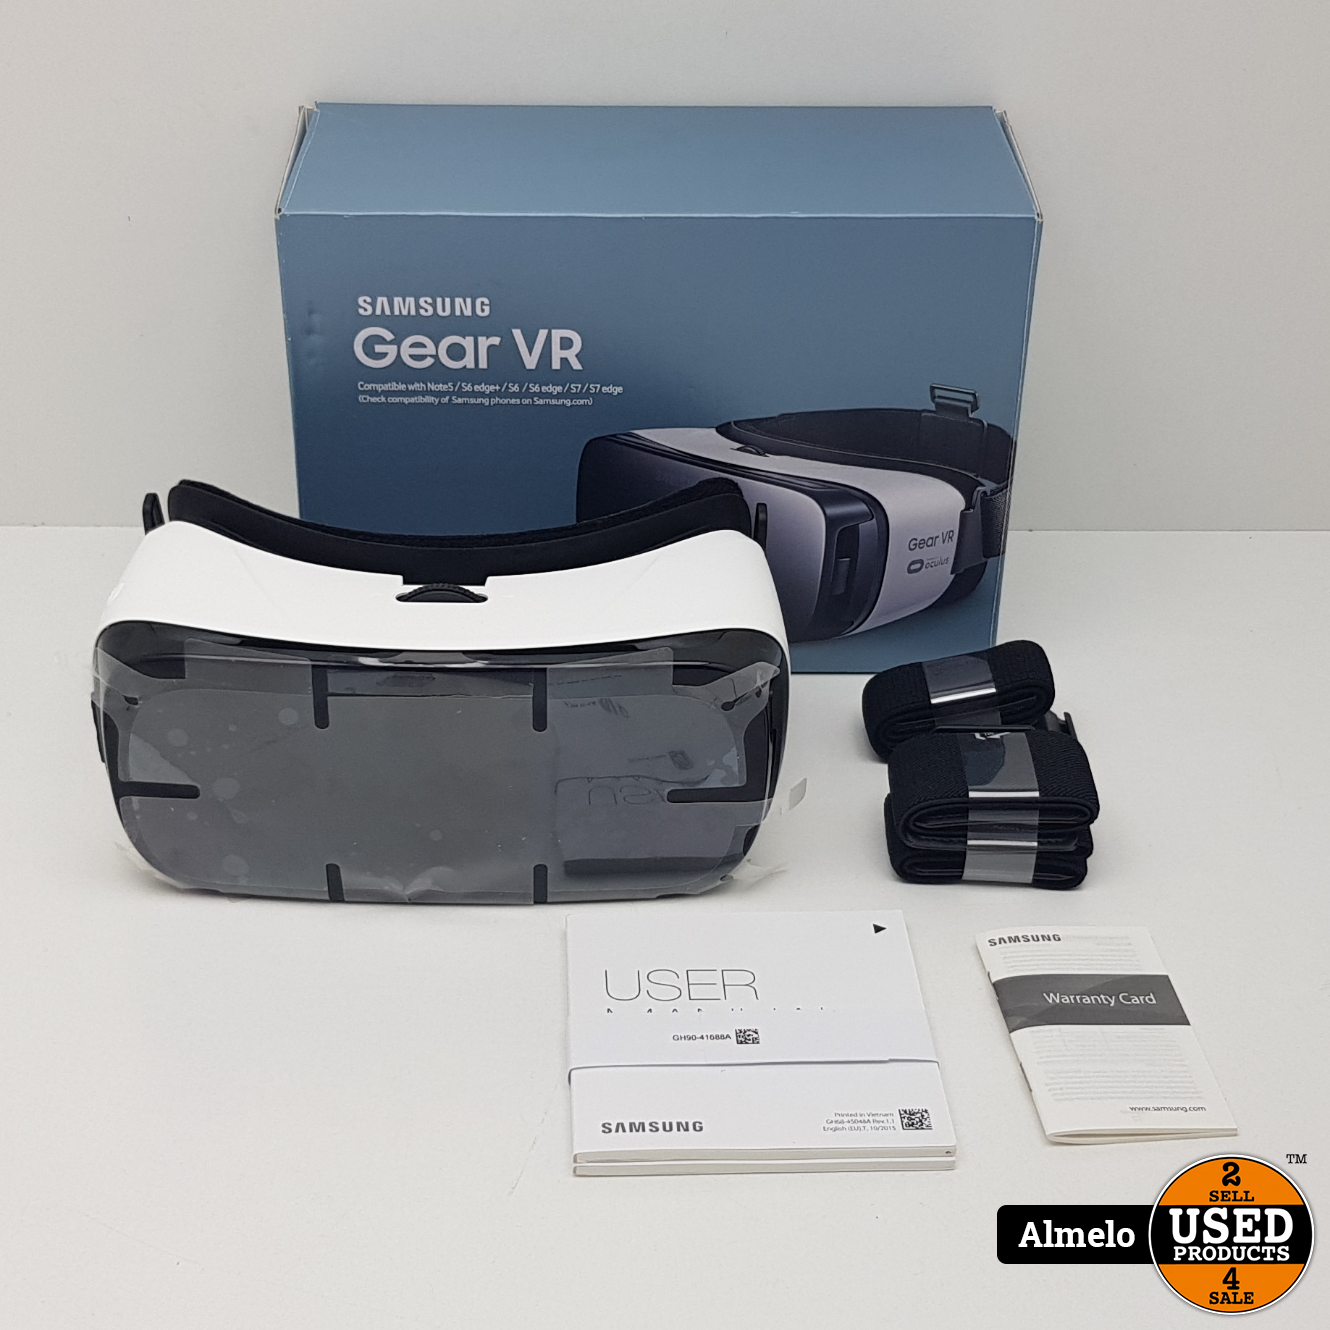 samsung Samsung Gear VR Oculus in doos - Used Almelo